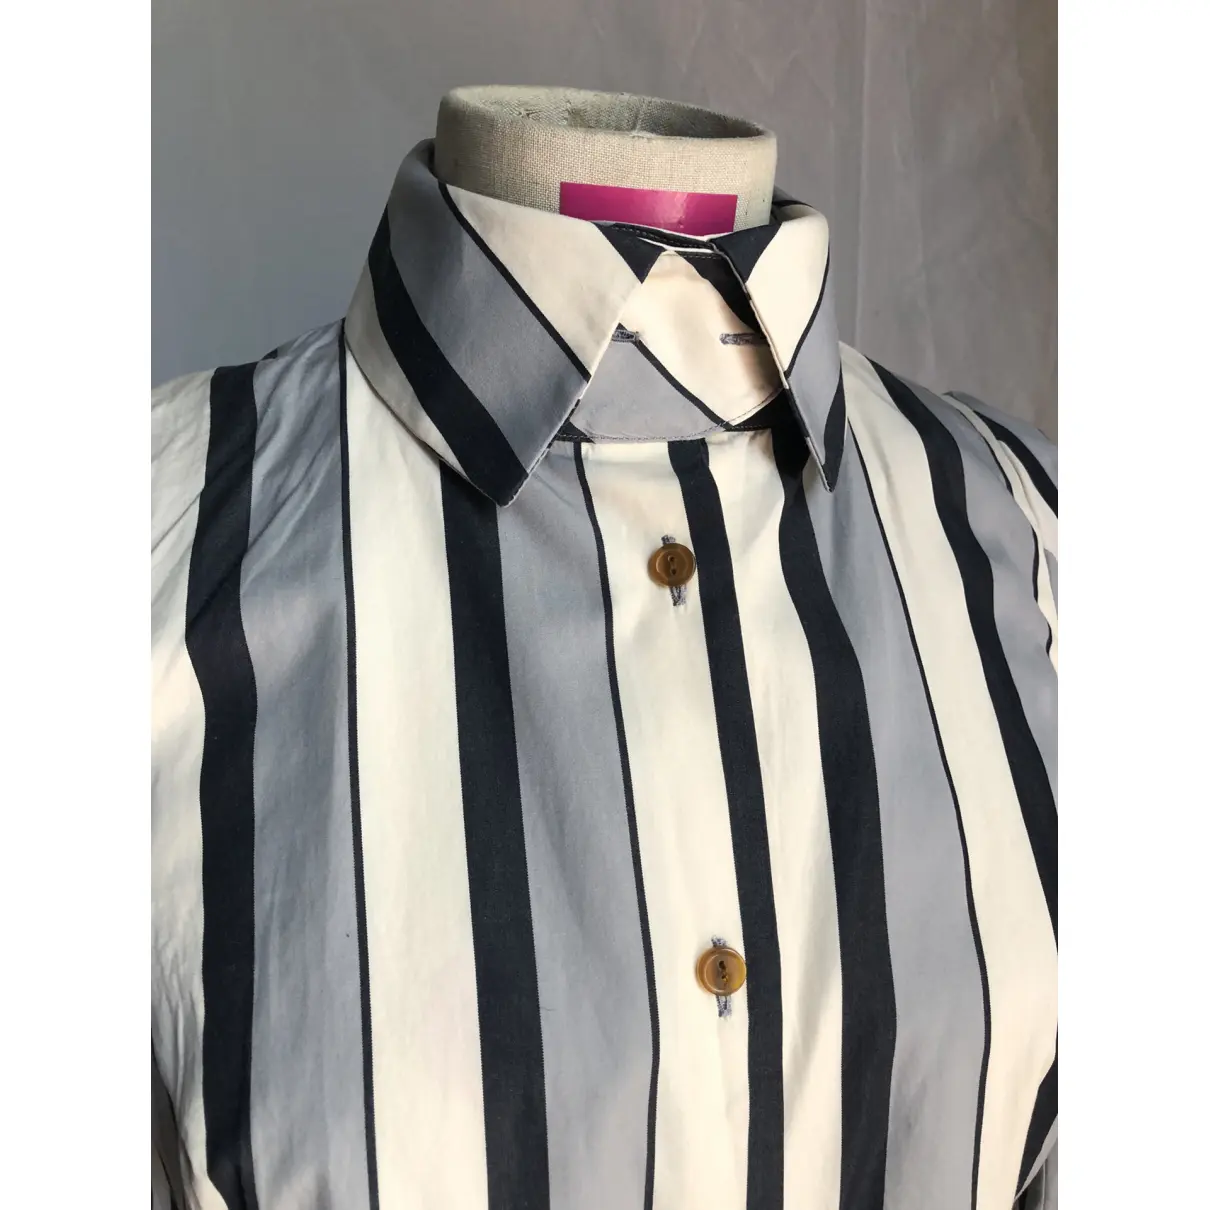 Buy Vivienne Westwood Shirt online - Vintage